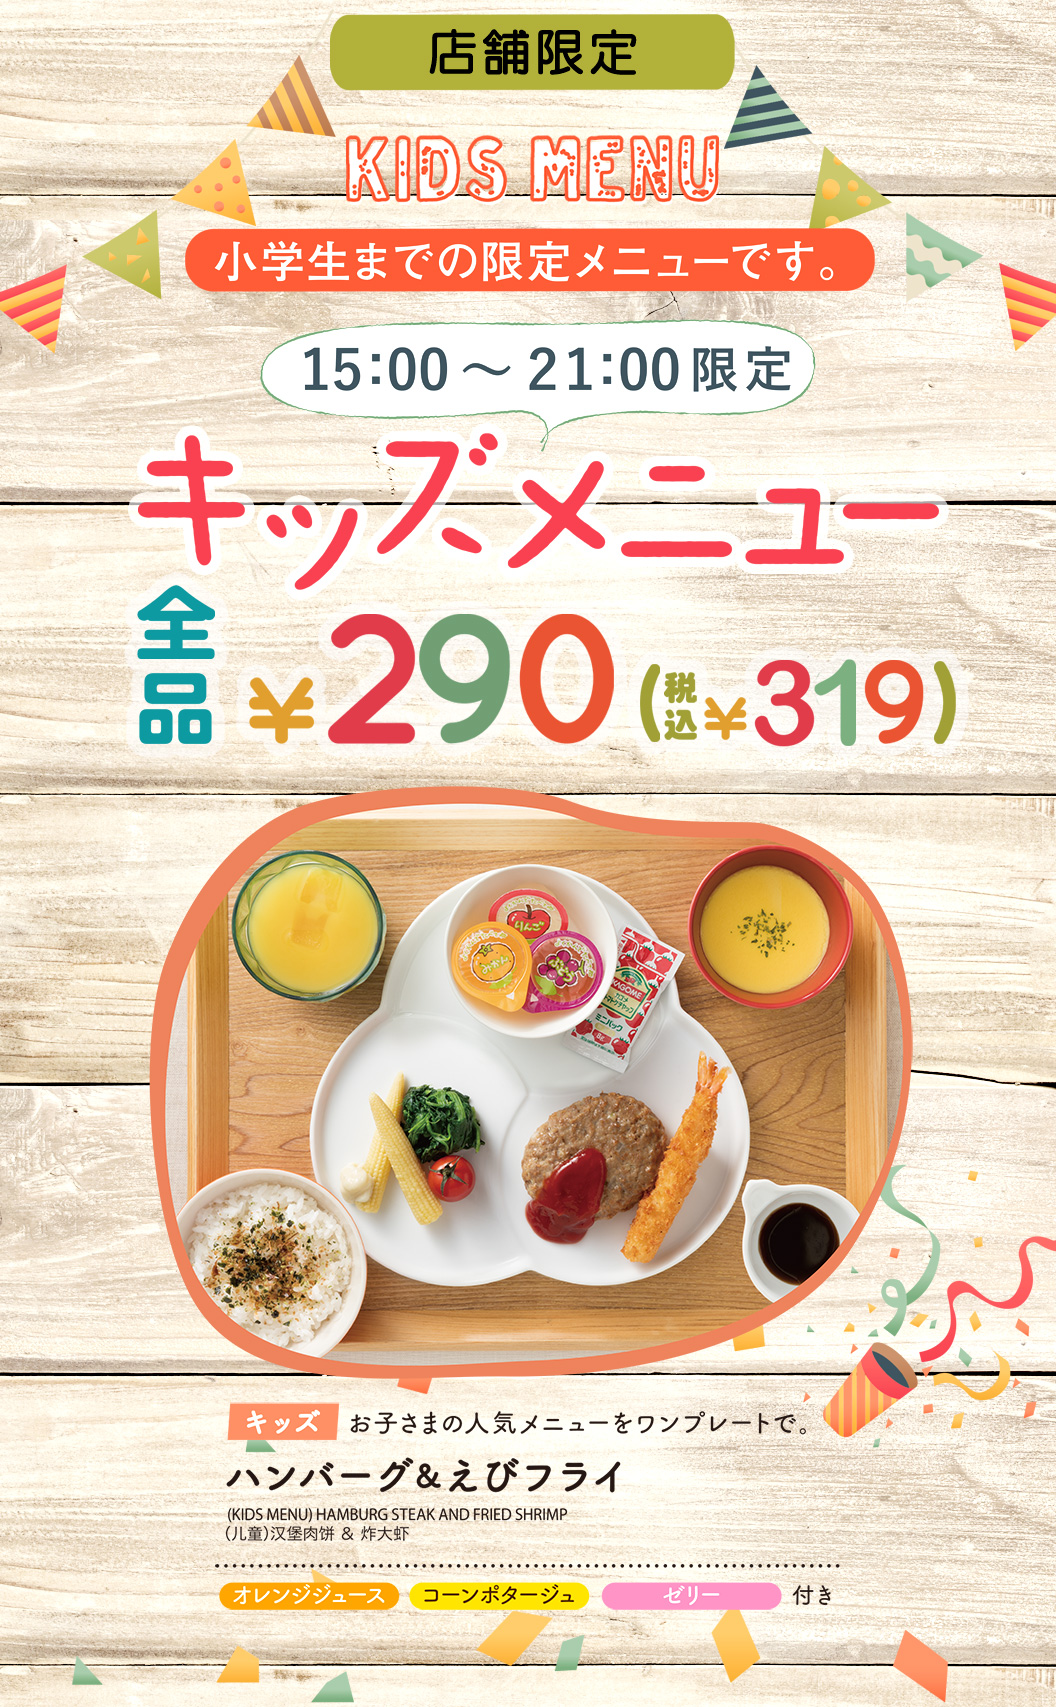 【店铺限定】儿童餐菜单全部290日元（含税319日元） 人气汉堡排和炸虾一盘、橙汁、玉米浓汤、果冻等